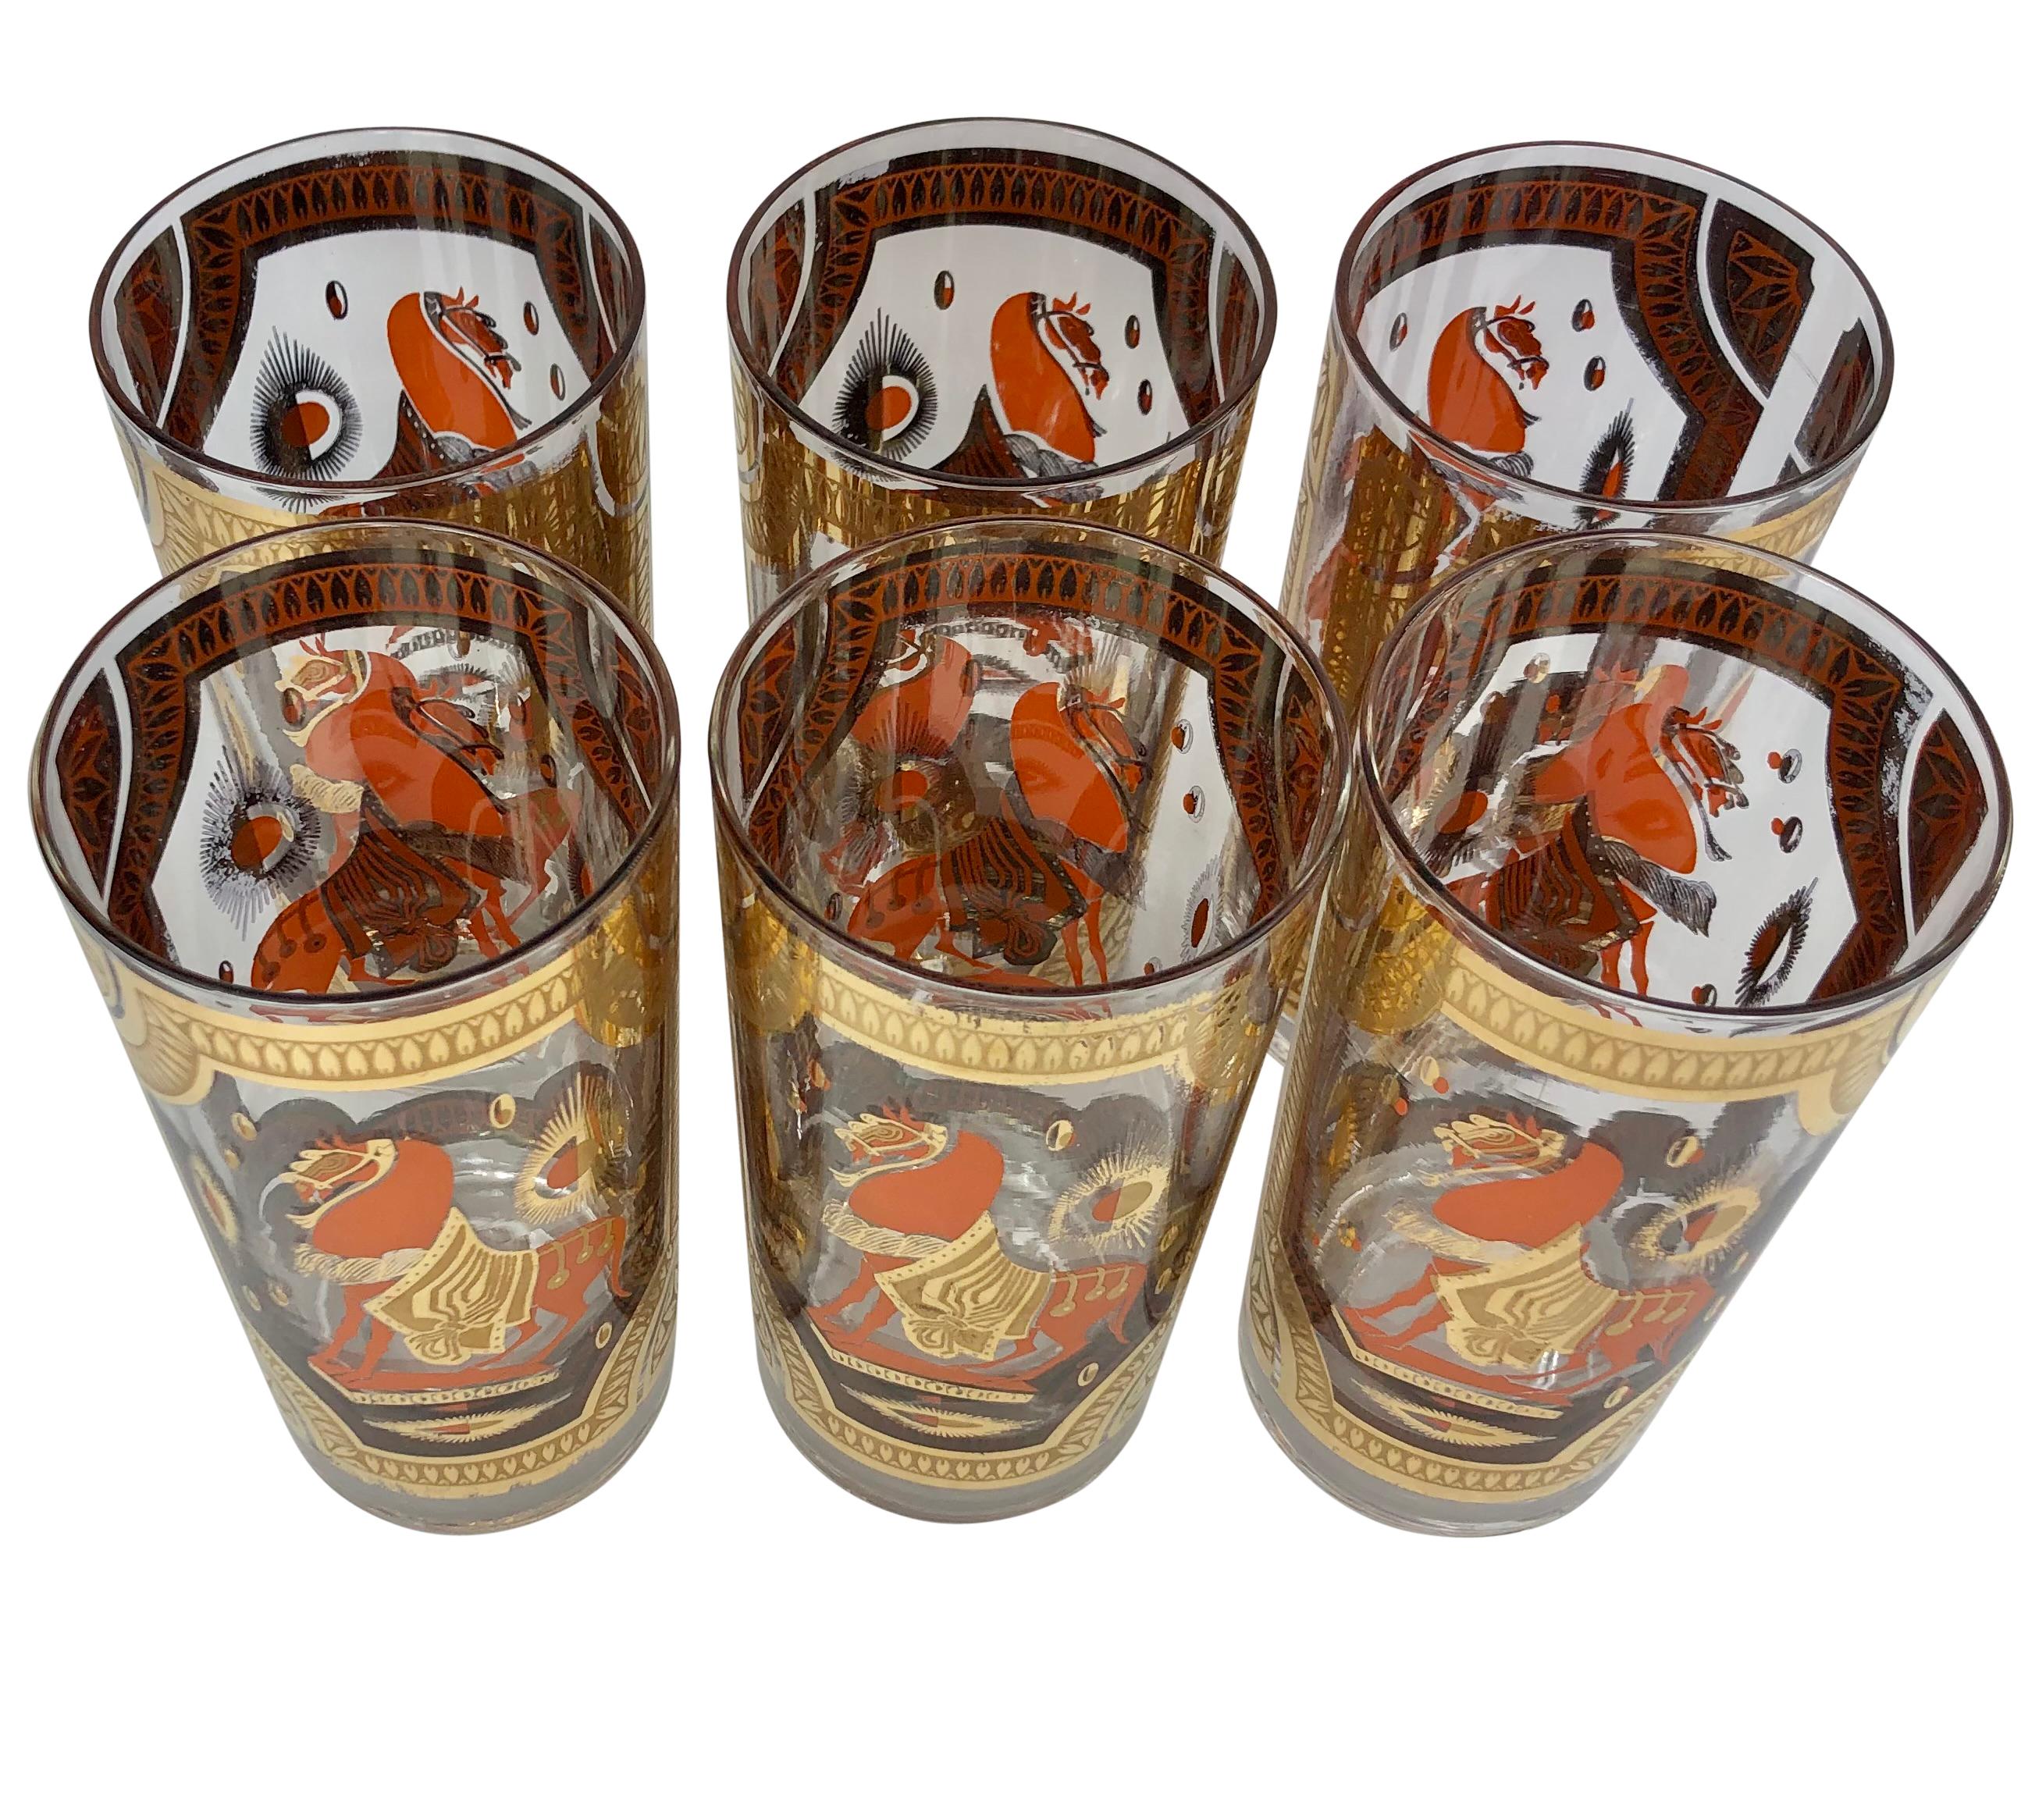  Set de 6 verres Vintage Fred Press Orange et Or 22K Trojan Horse Highball Glasses. Conçue avec des chevaux cabrés aux couleurs vibrantes et des bordures audacieuses en or 22k. Les lunettes mesurent 5 1/2